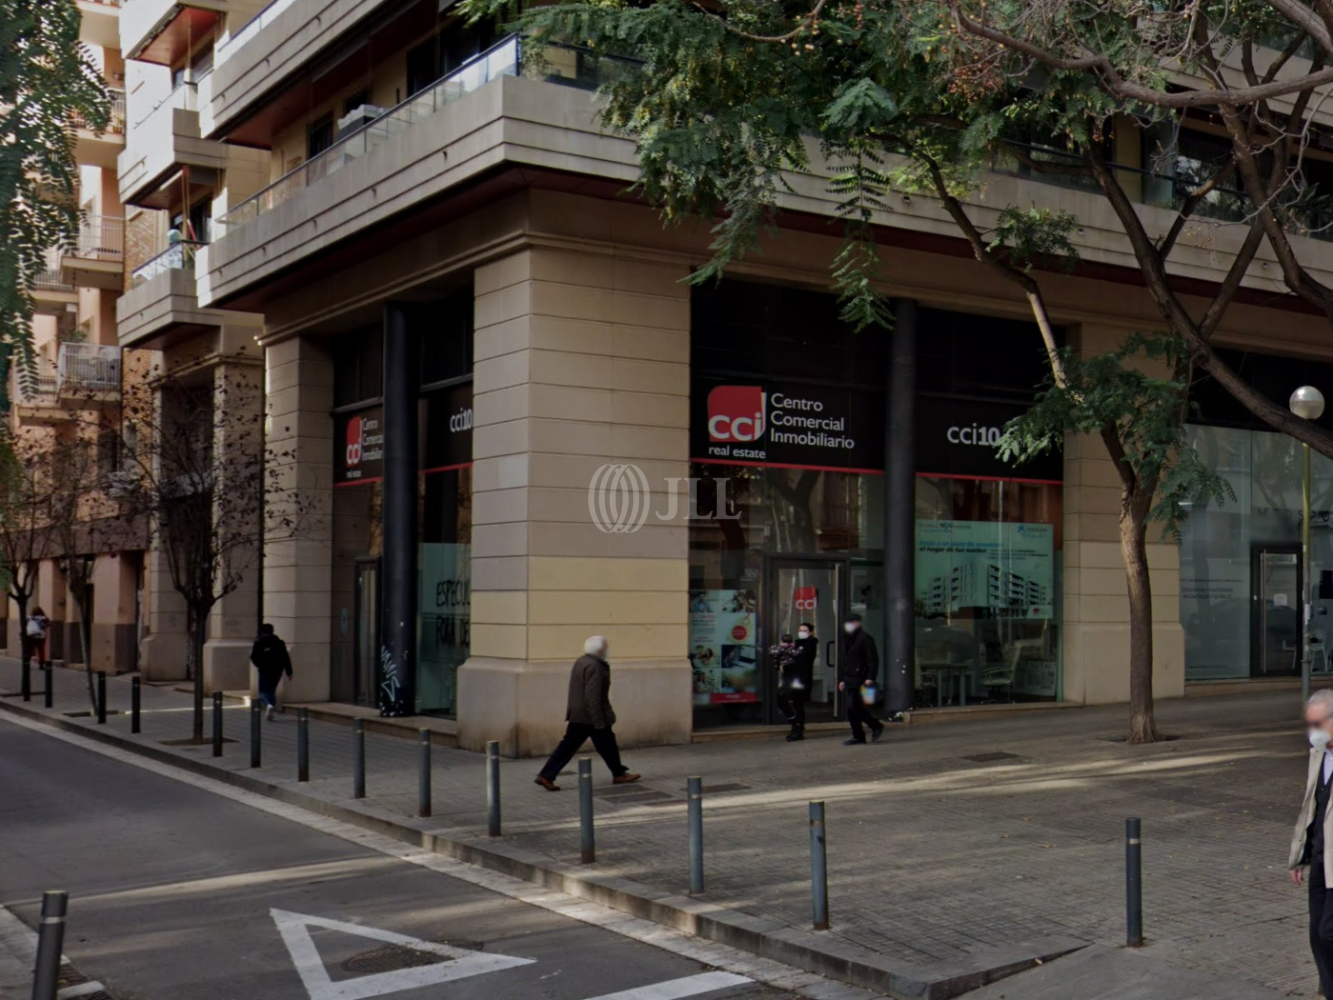 Local comercial Barcelona, 08014 - Comtes de Bell-Lloc 189- 195 Local